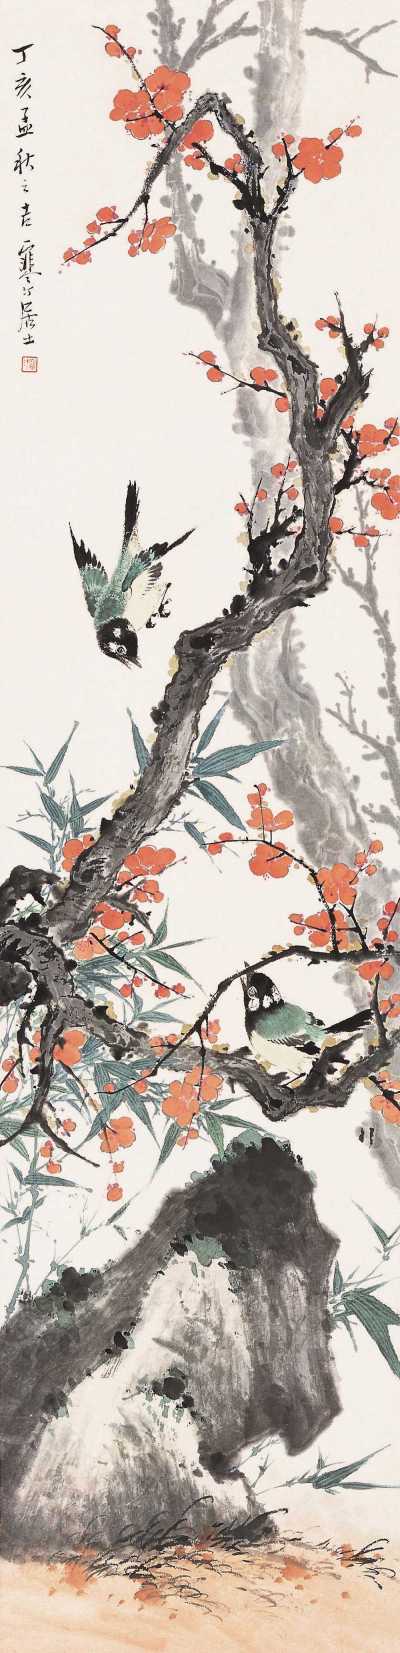 江寒汀 丁亥（1947年）作 梅竹戏禽 立轴